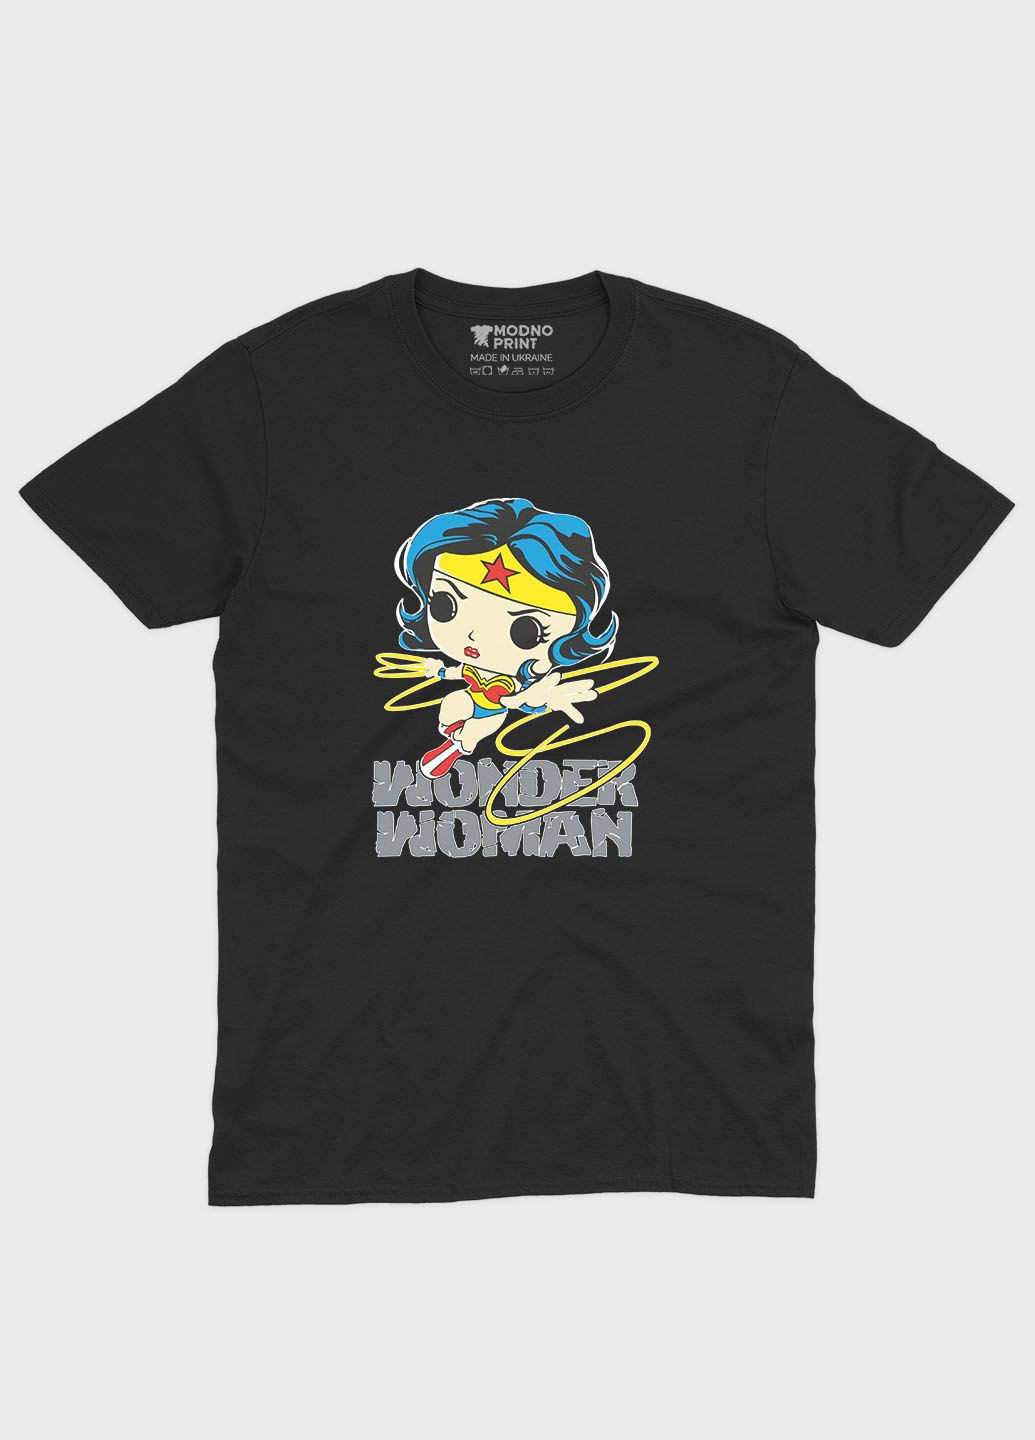 Черная демисезонная футболка для мальчика с принтом супергероя - чудо-женщина (ts001-1-bl-006-006-005-b) Modno